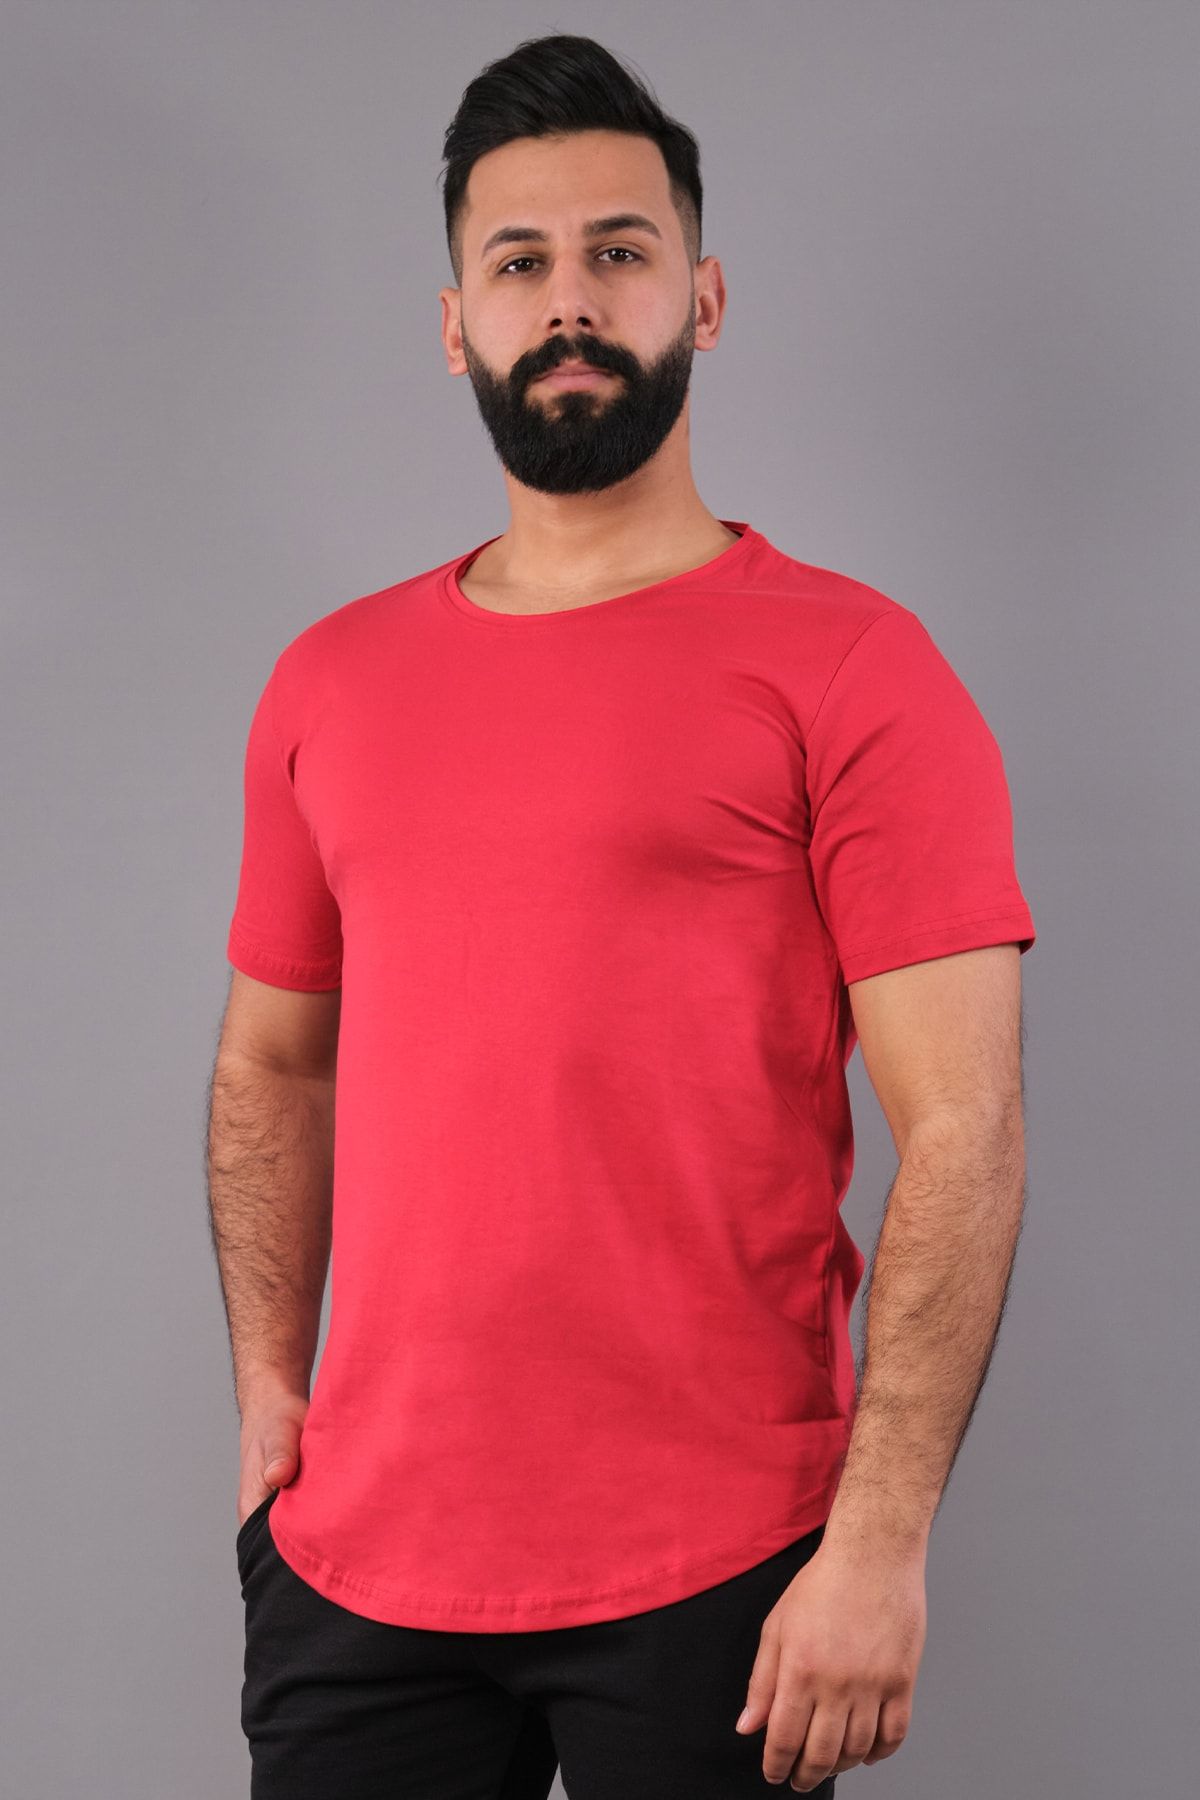 NewCabin Kırmızı Renk Erkek Tişört Oval Kesimli Slim Fit Tişört Standart Kesim (KSOKT-L)